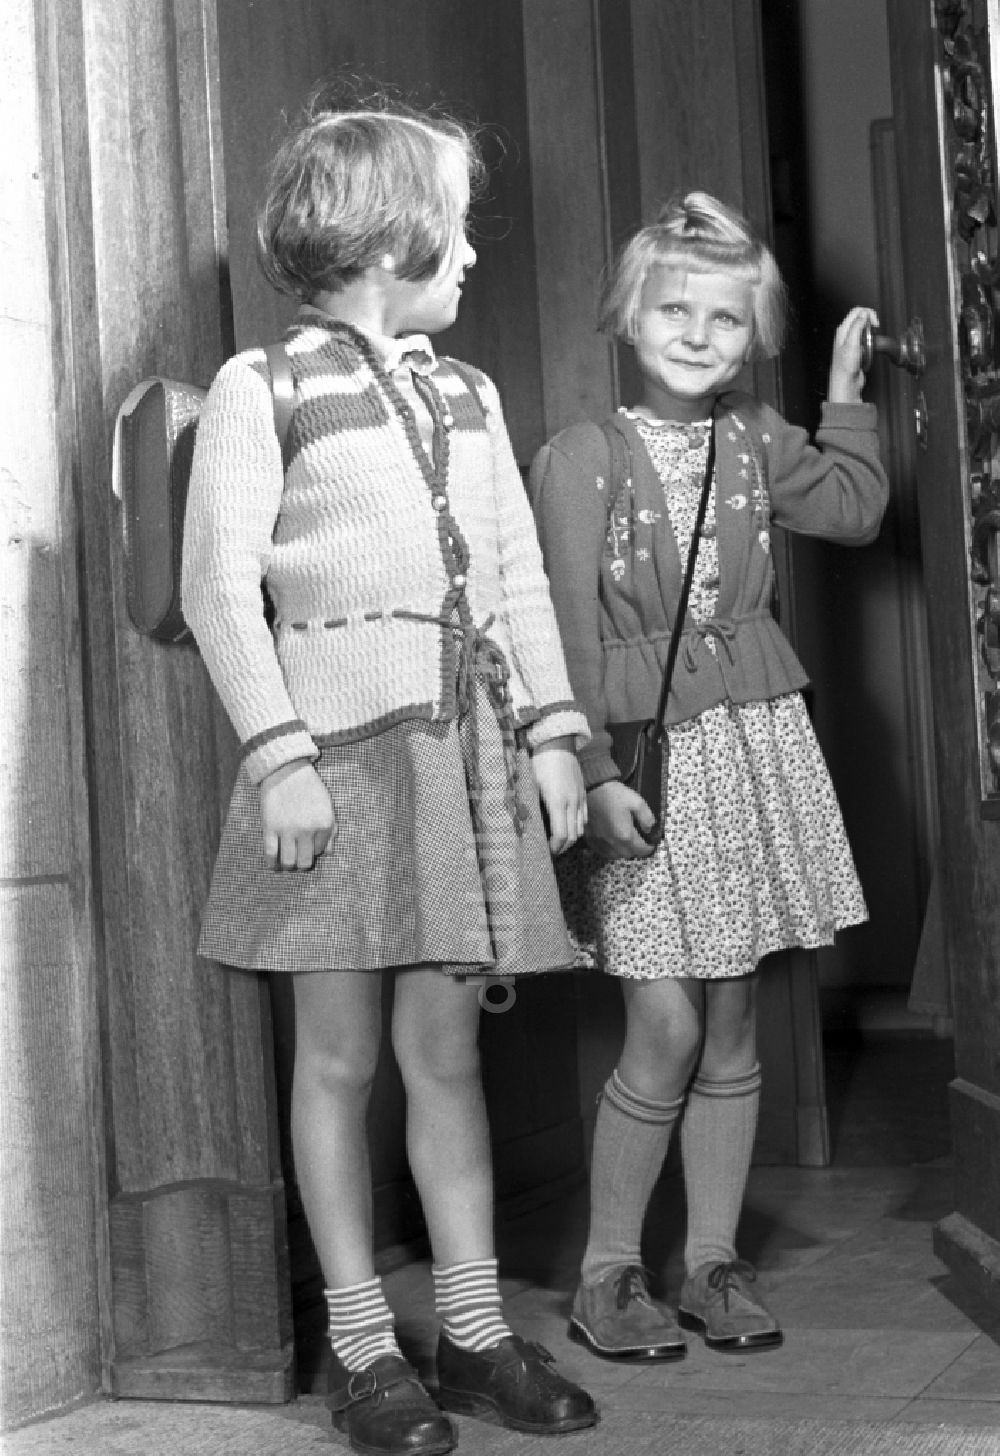 DDR-Fotoarchiv: Dresden - Schulanfang für zwei junge Mädchen mit Schulranzen in Dresden in Sachsen auf dem Gebiet der ehemaligen DDR